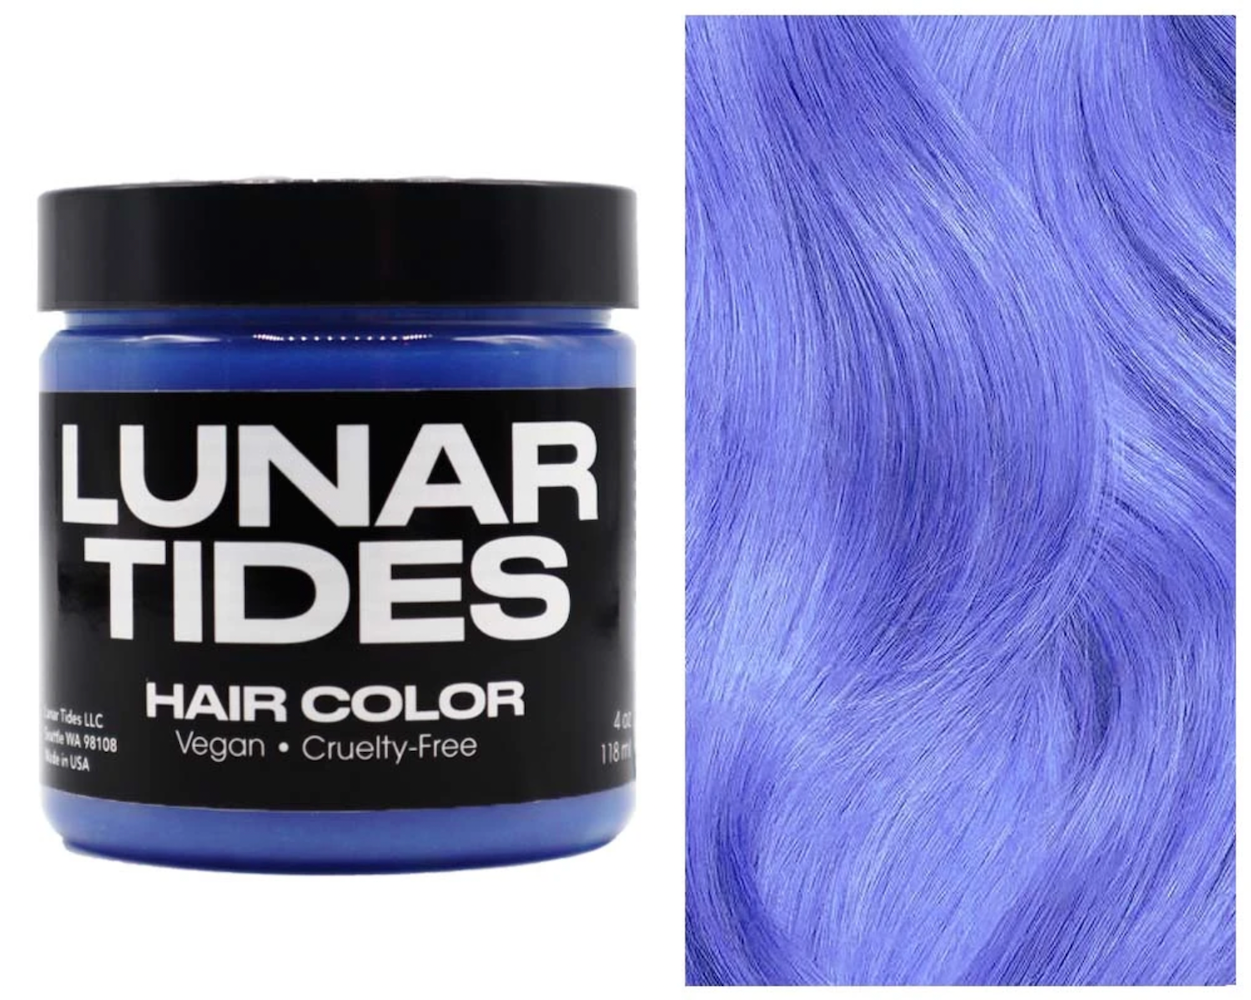 Lunar Tides Hair Dye - Moonstone